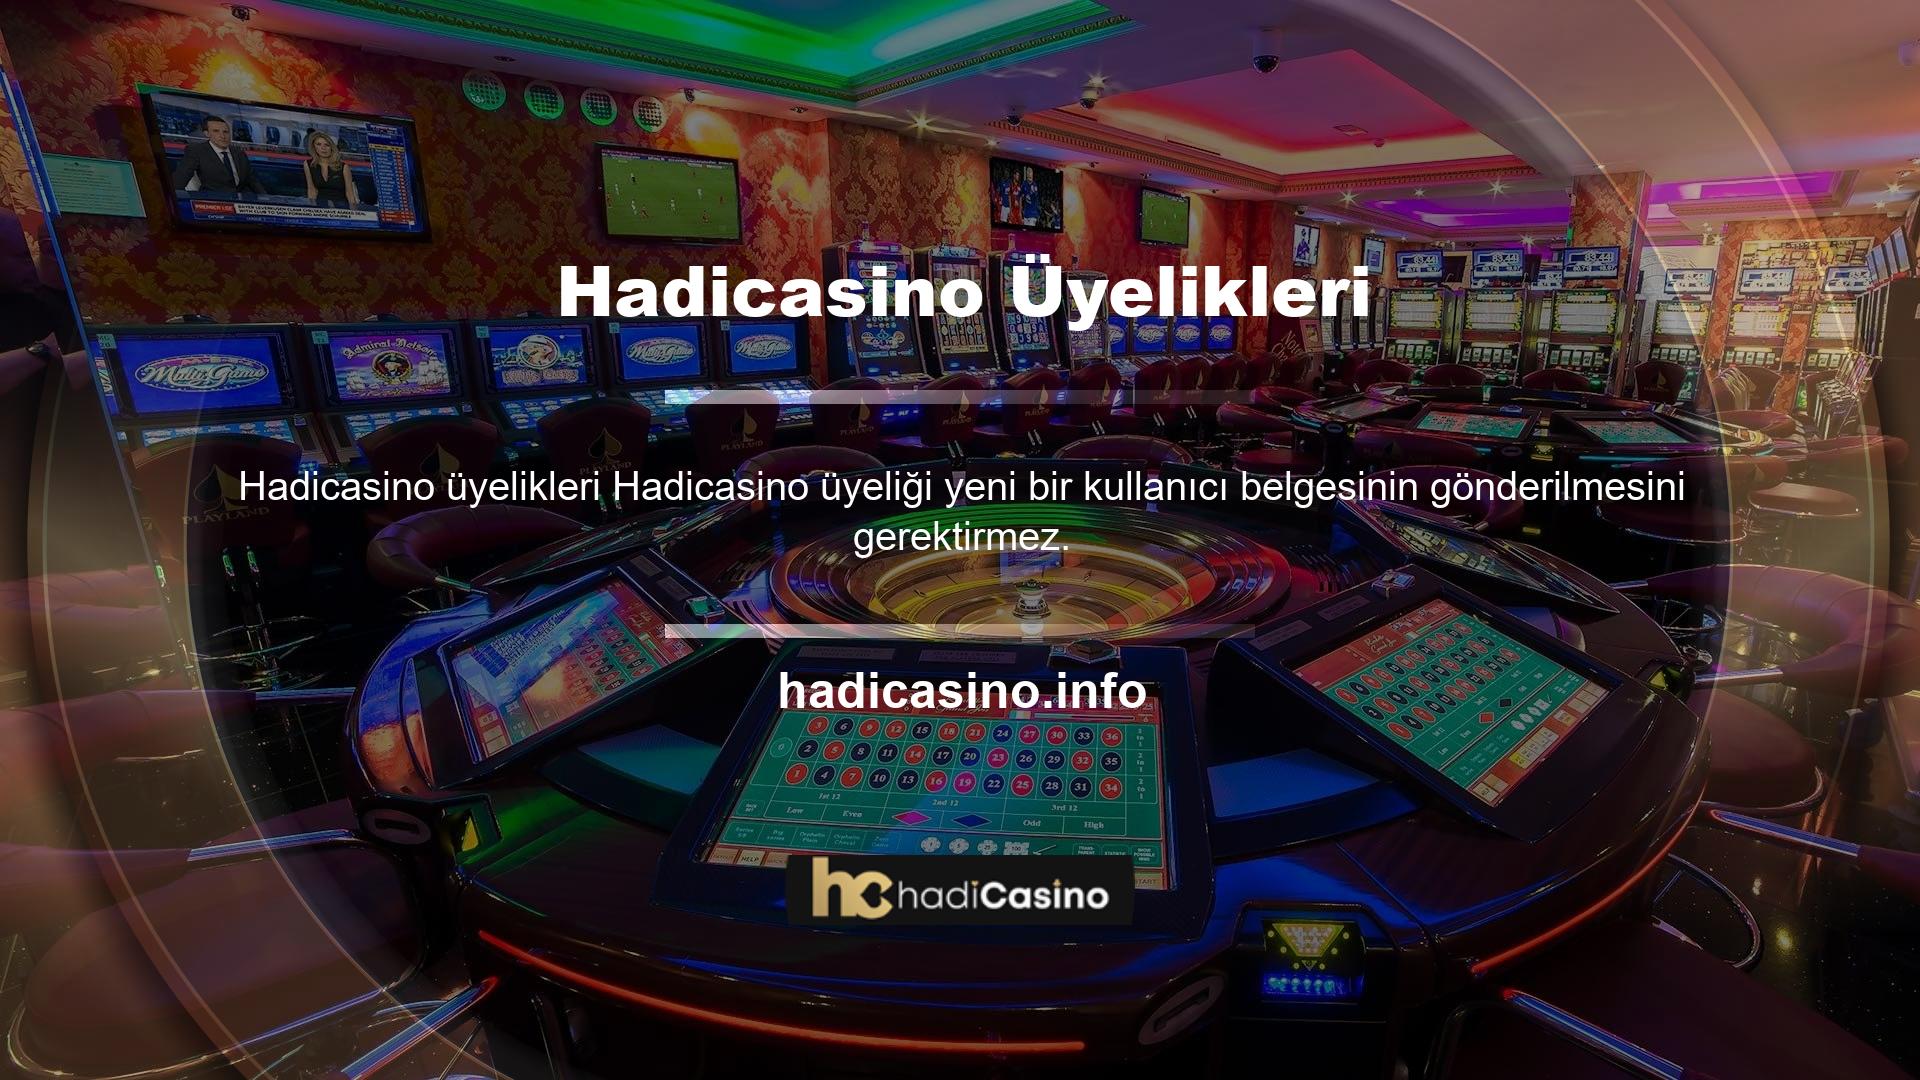 Hadicasino web sitesine erişmek ve üye olarak katılmak için lütfen aşağıda verilen talimatlara uyun